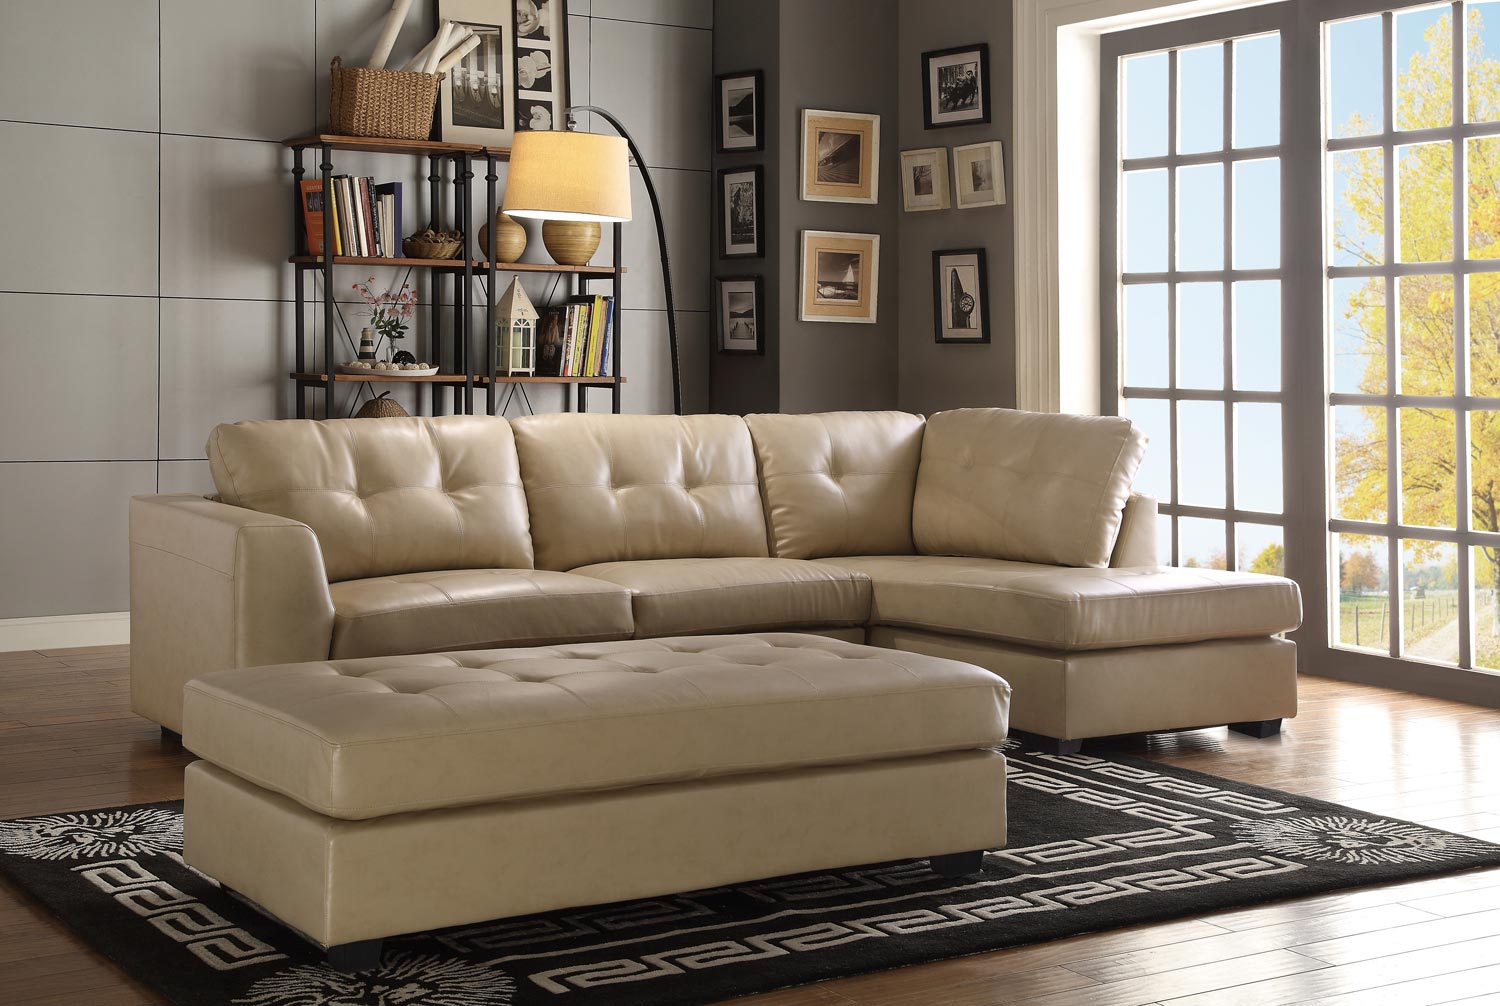 Homelegance Springer Sectional Sofa Set - Taupe - Bonded Leather Match